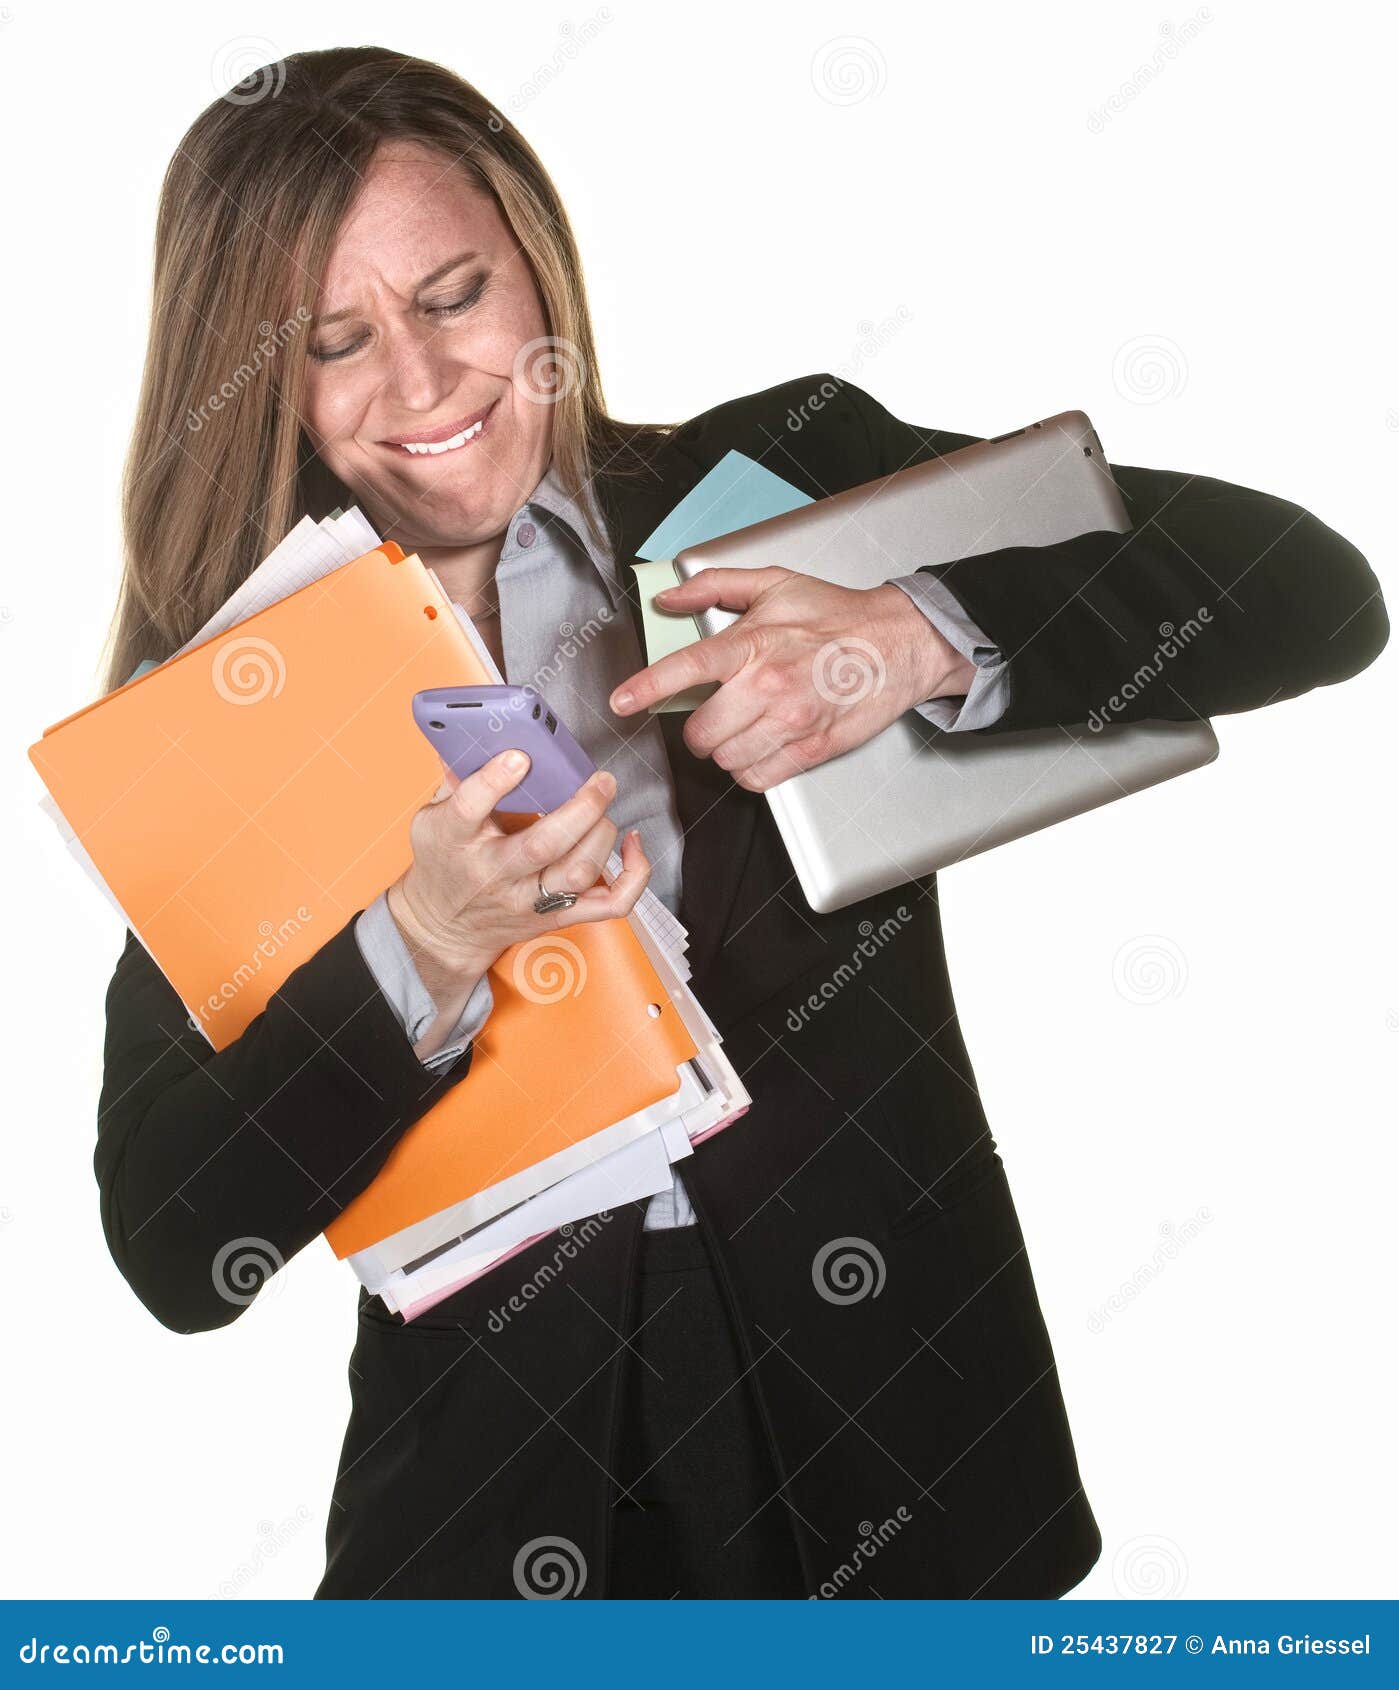 woman multi-tasking